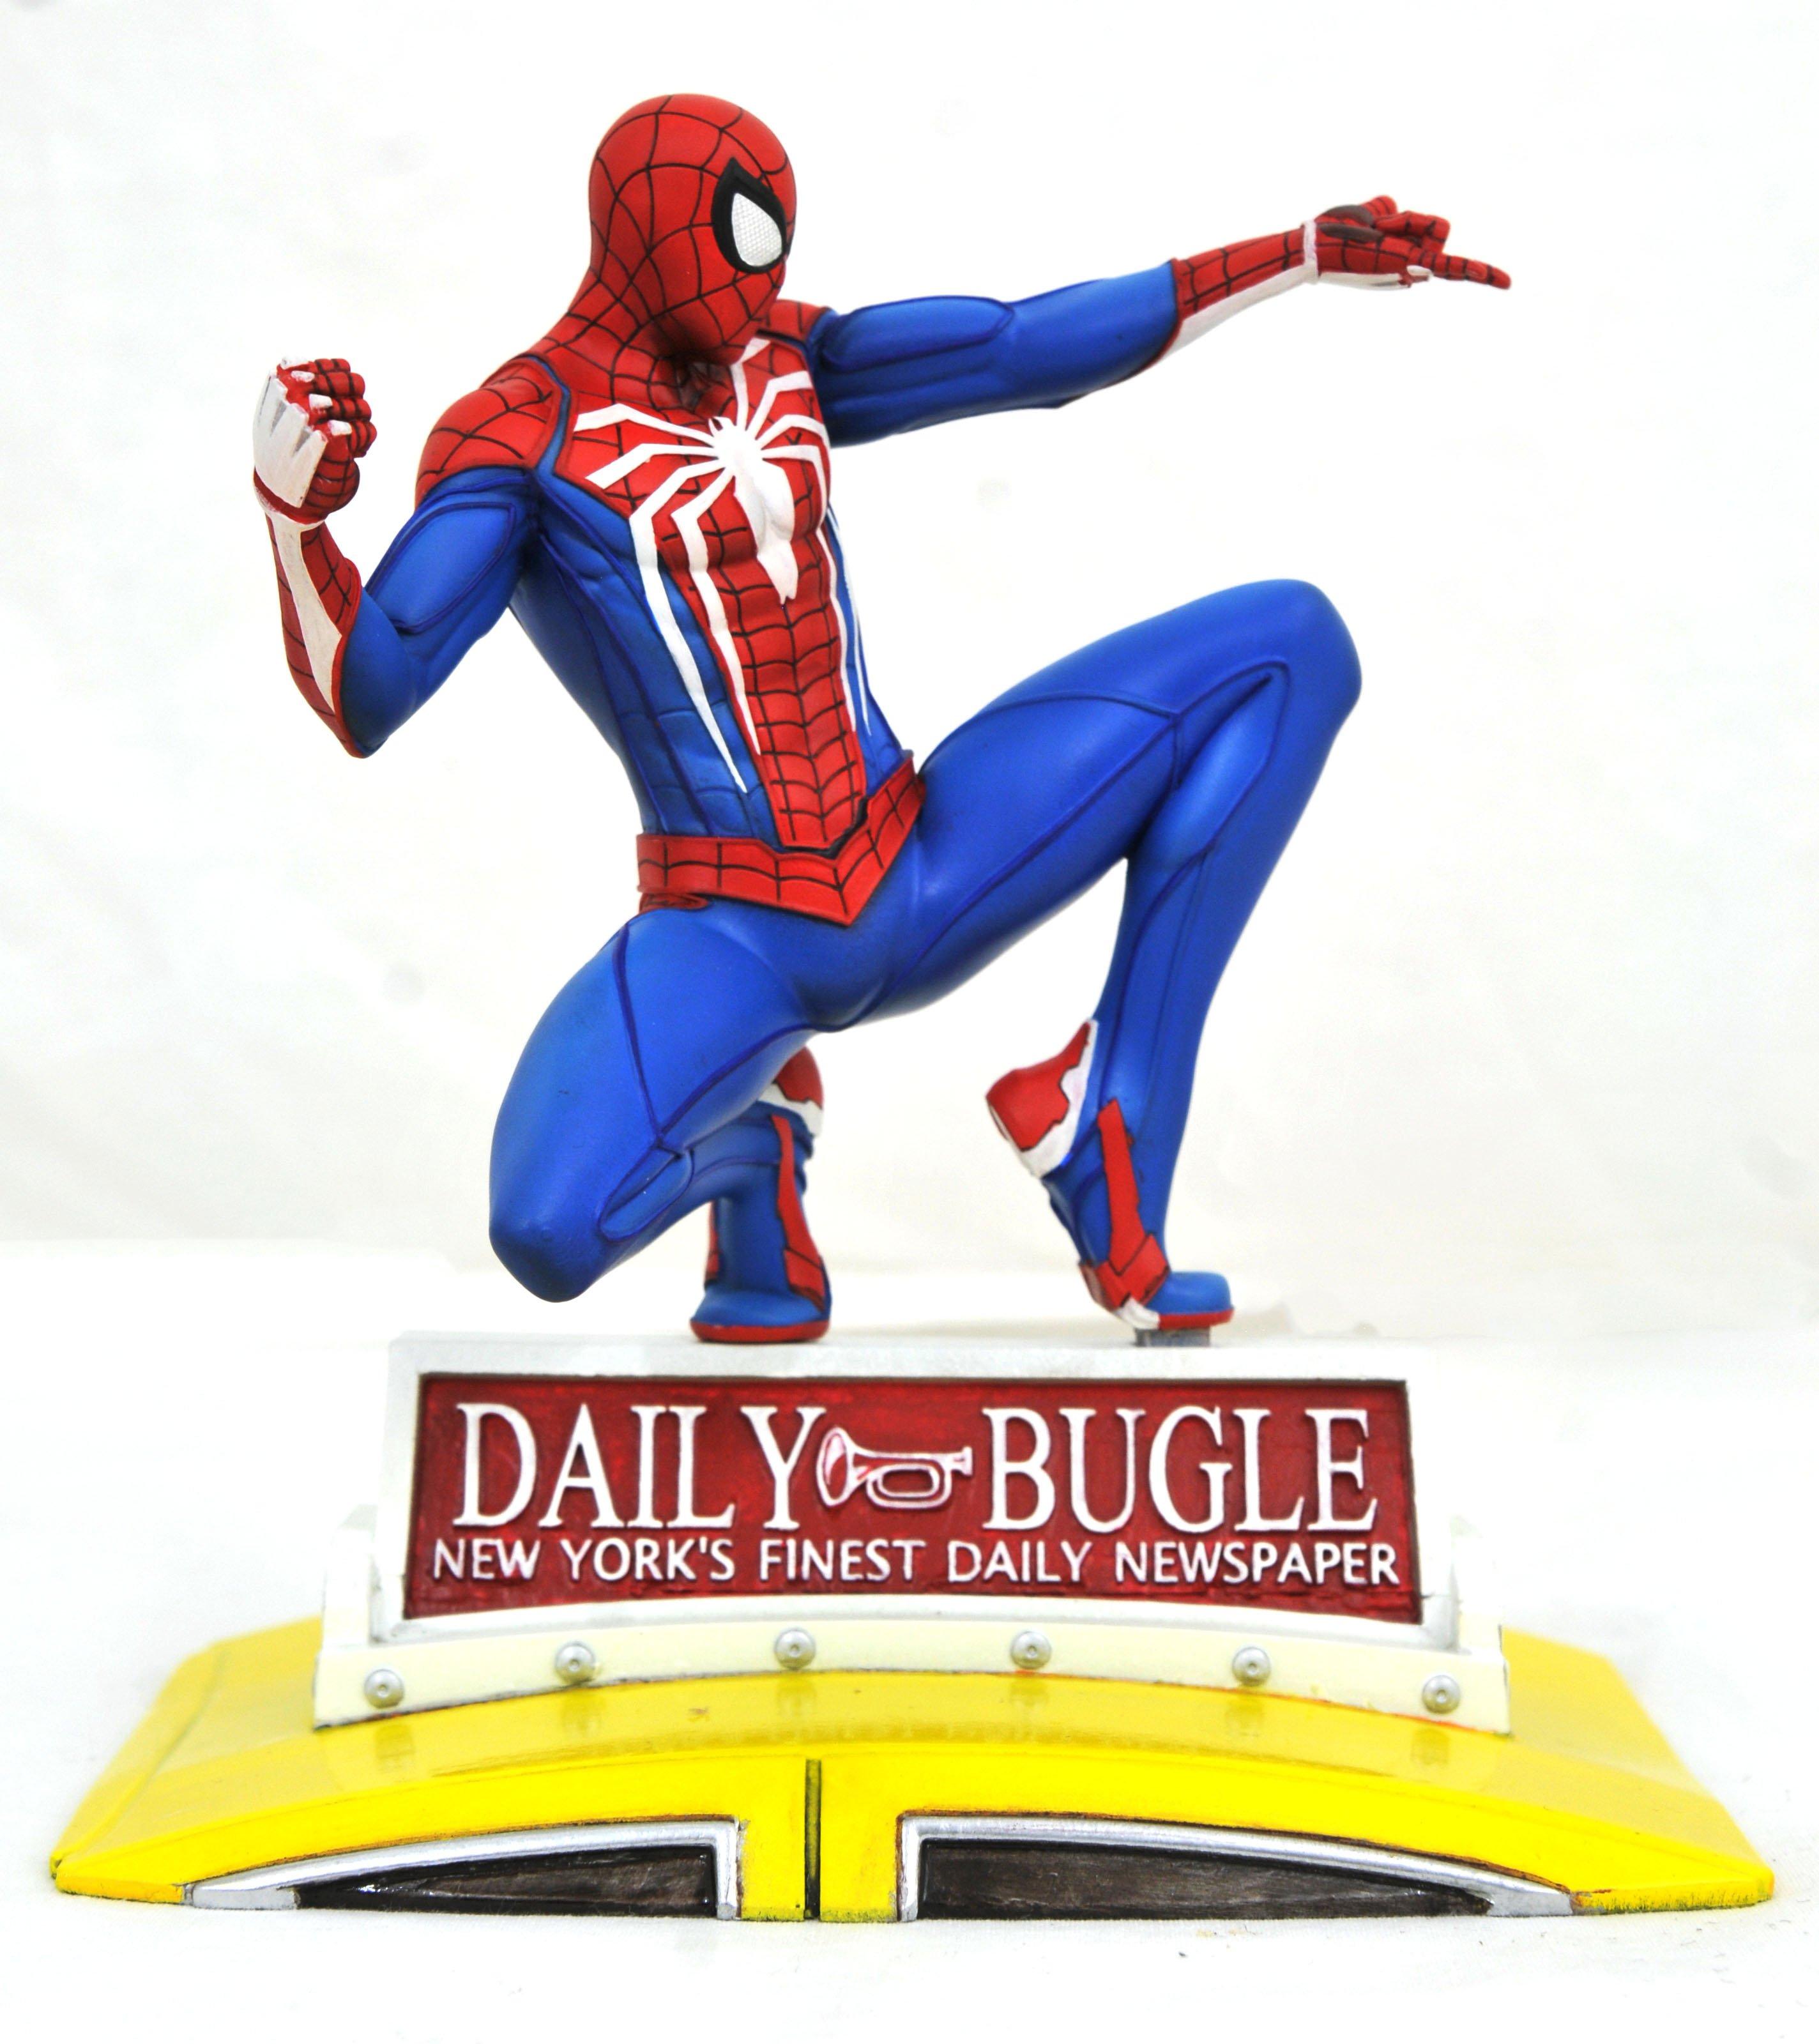 figurine spiderman marvel